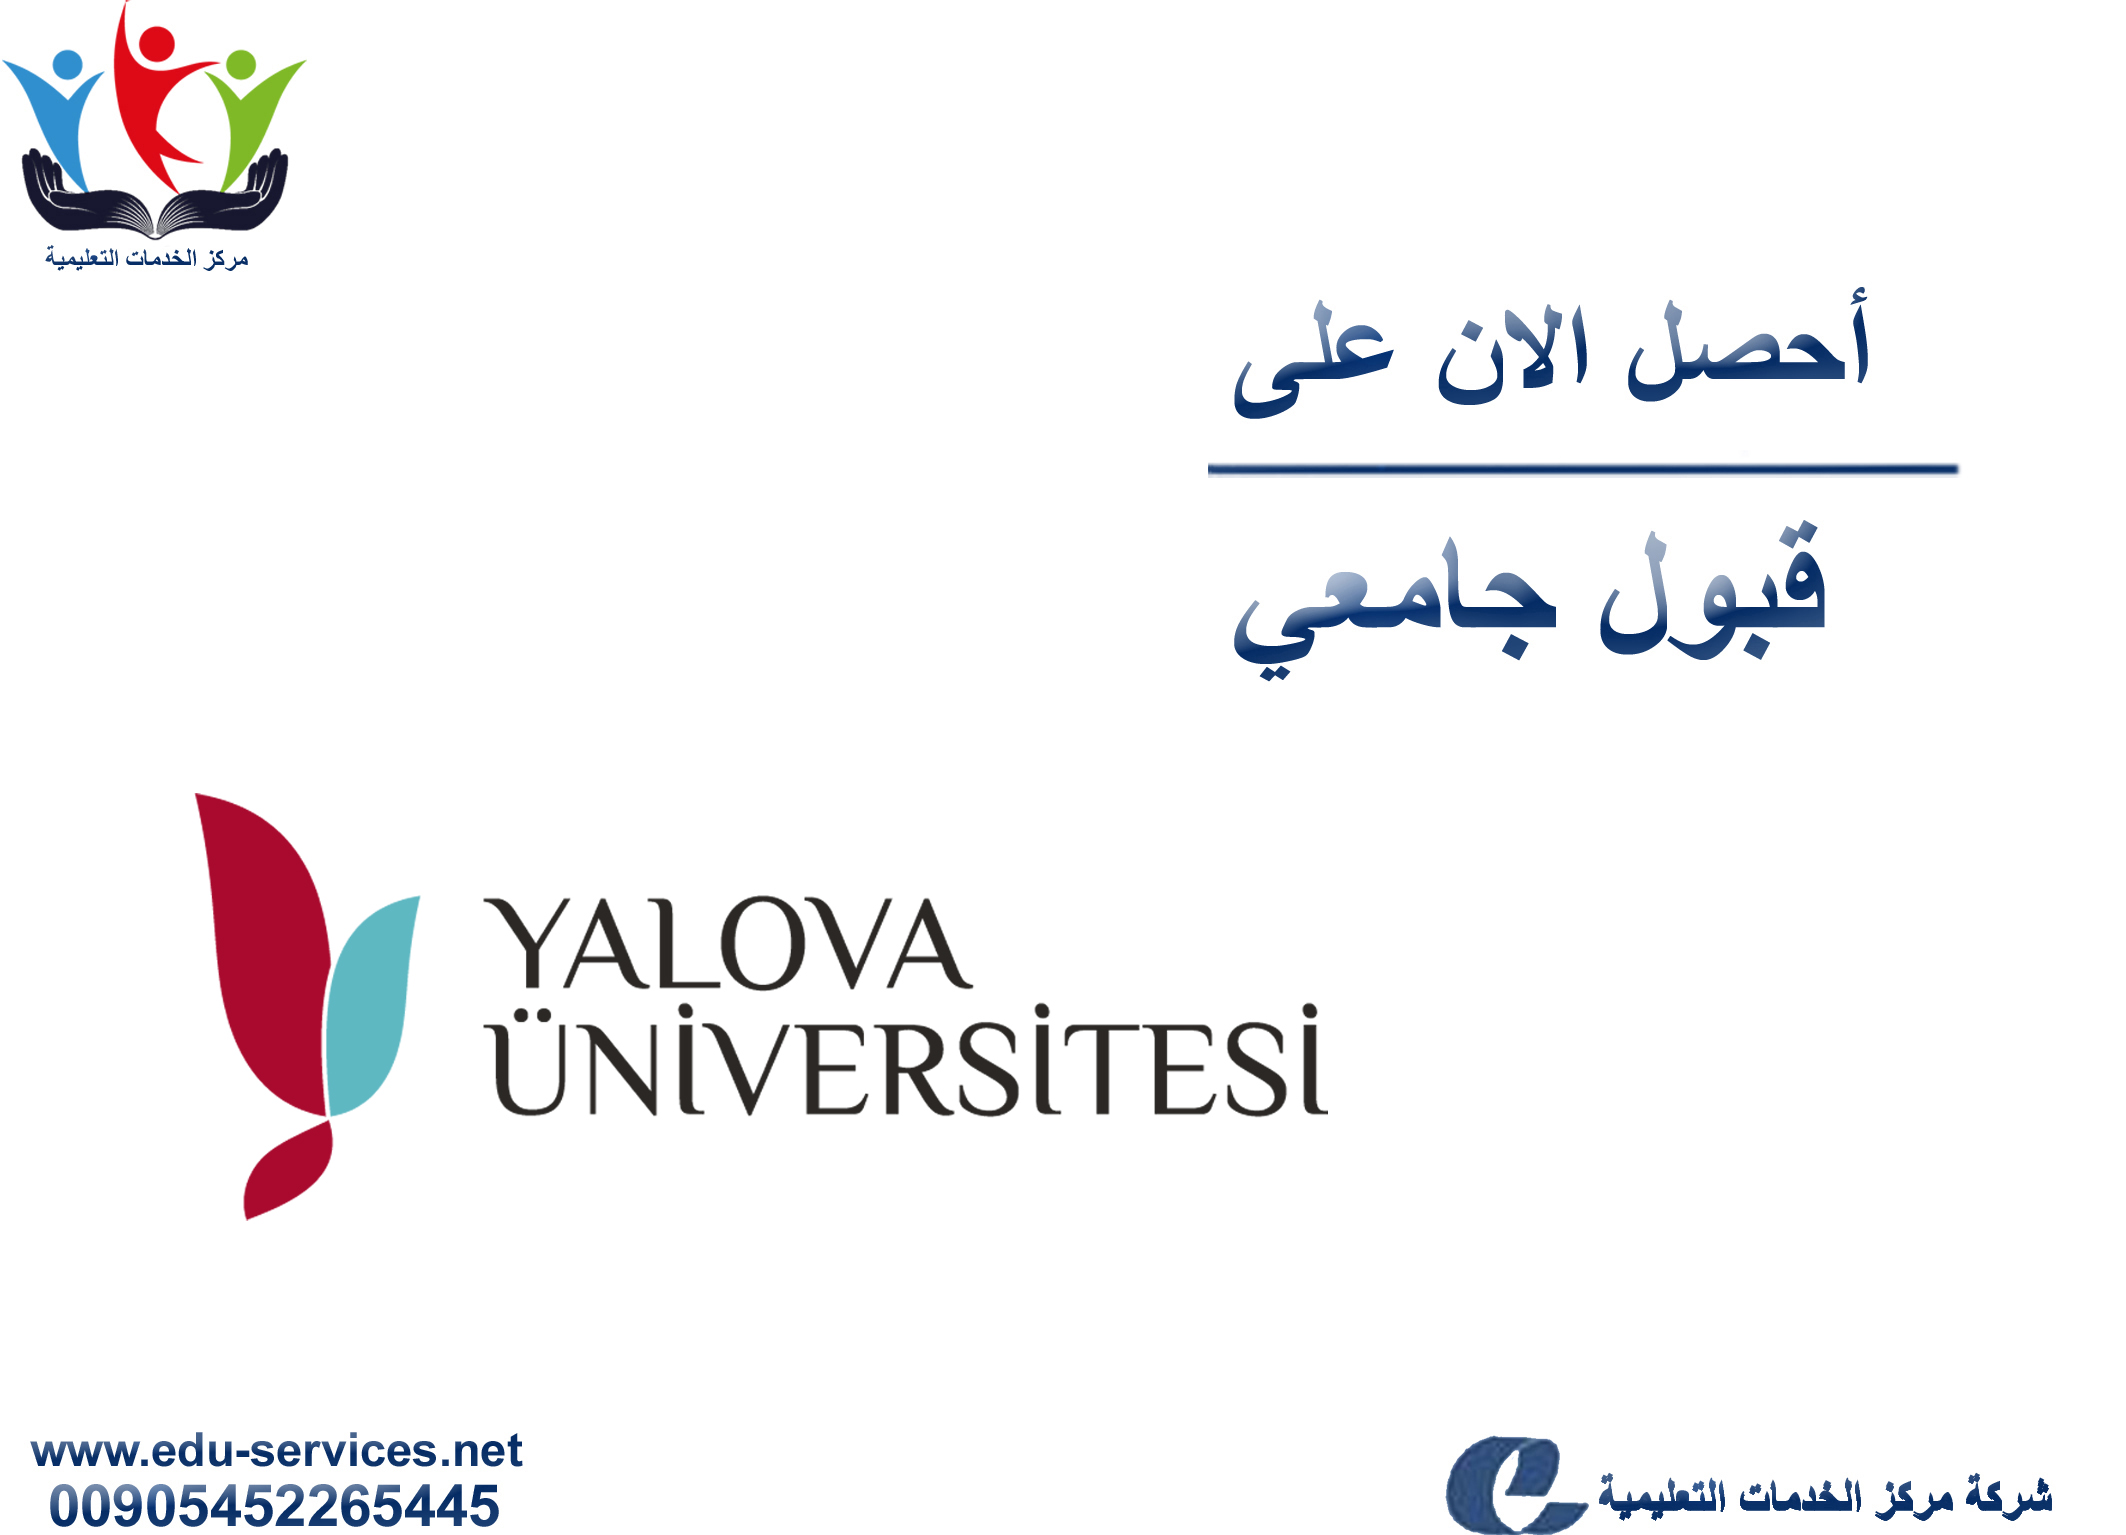 افتتاح التسجيل على جامعة يالوفا لبرنامج الدراسات العليا للعام 2019-2020